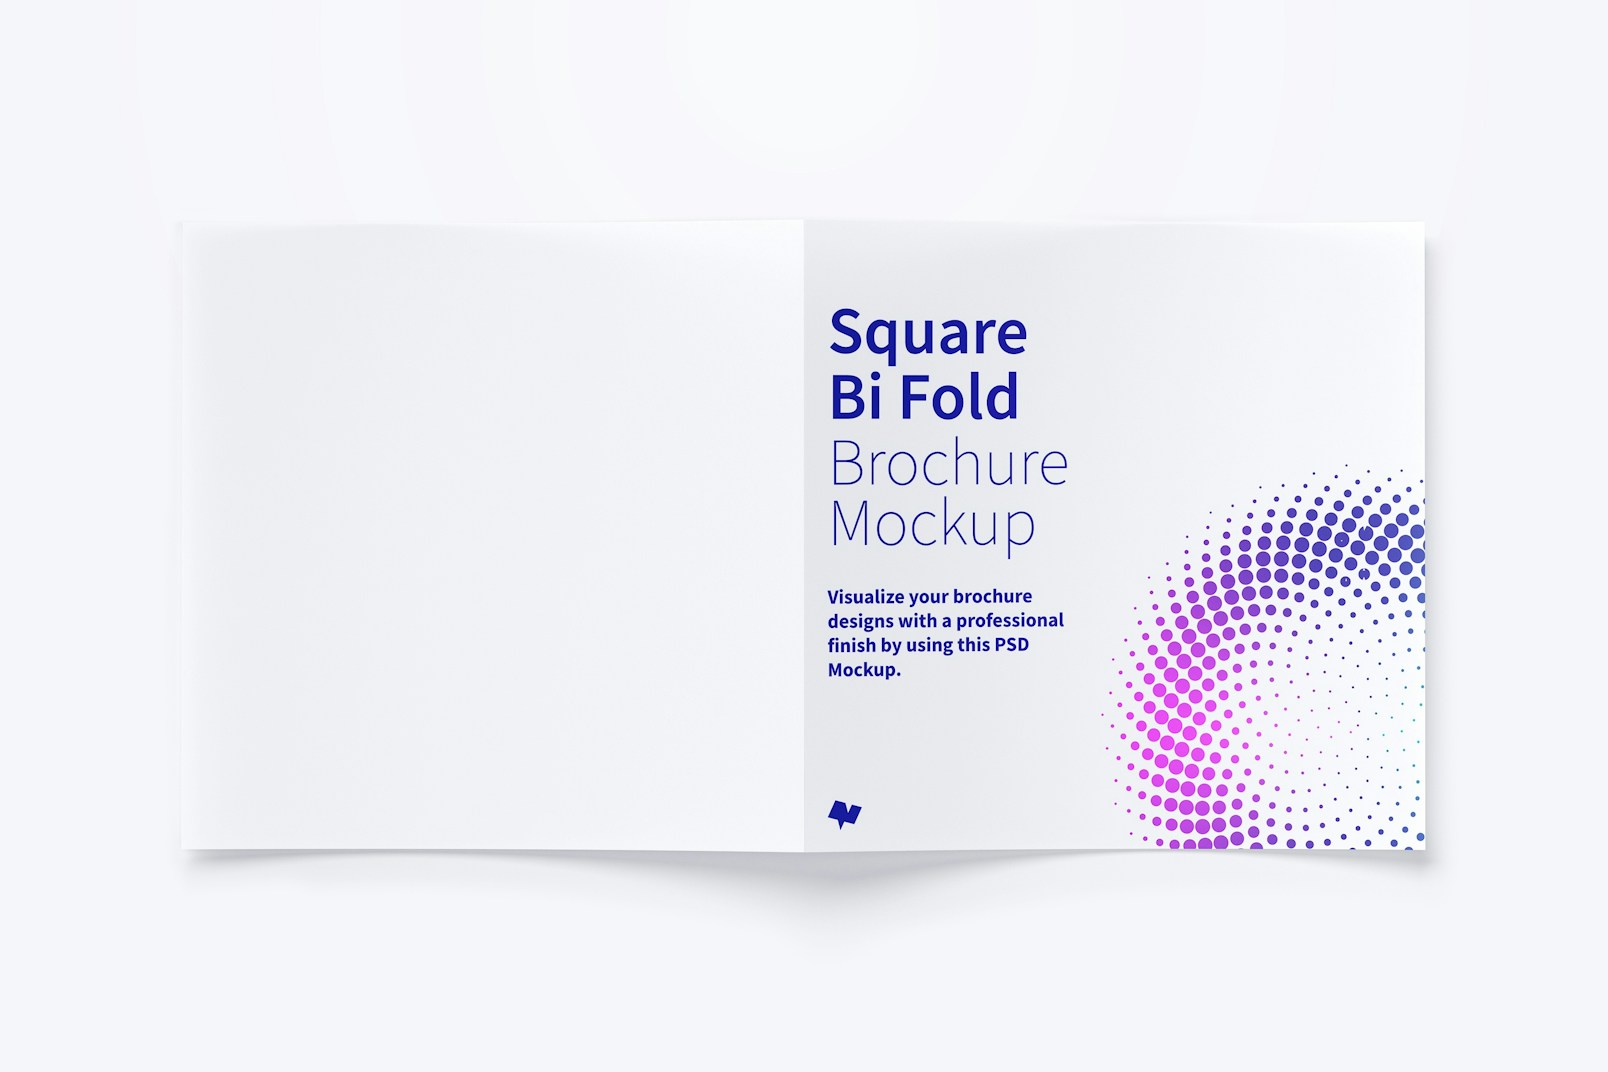 Square Bi Fold Brochure Mockup 03